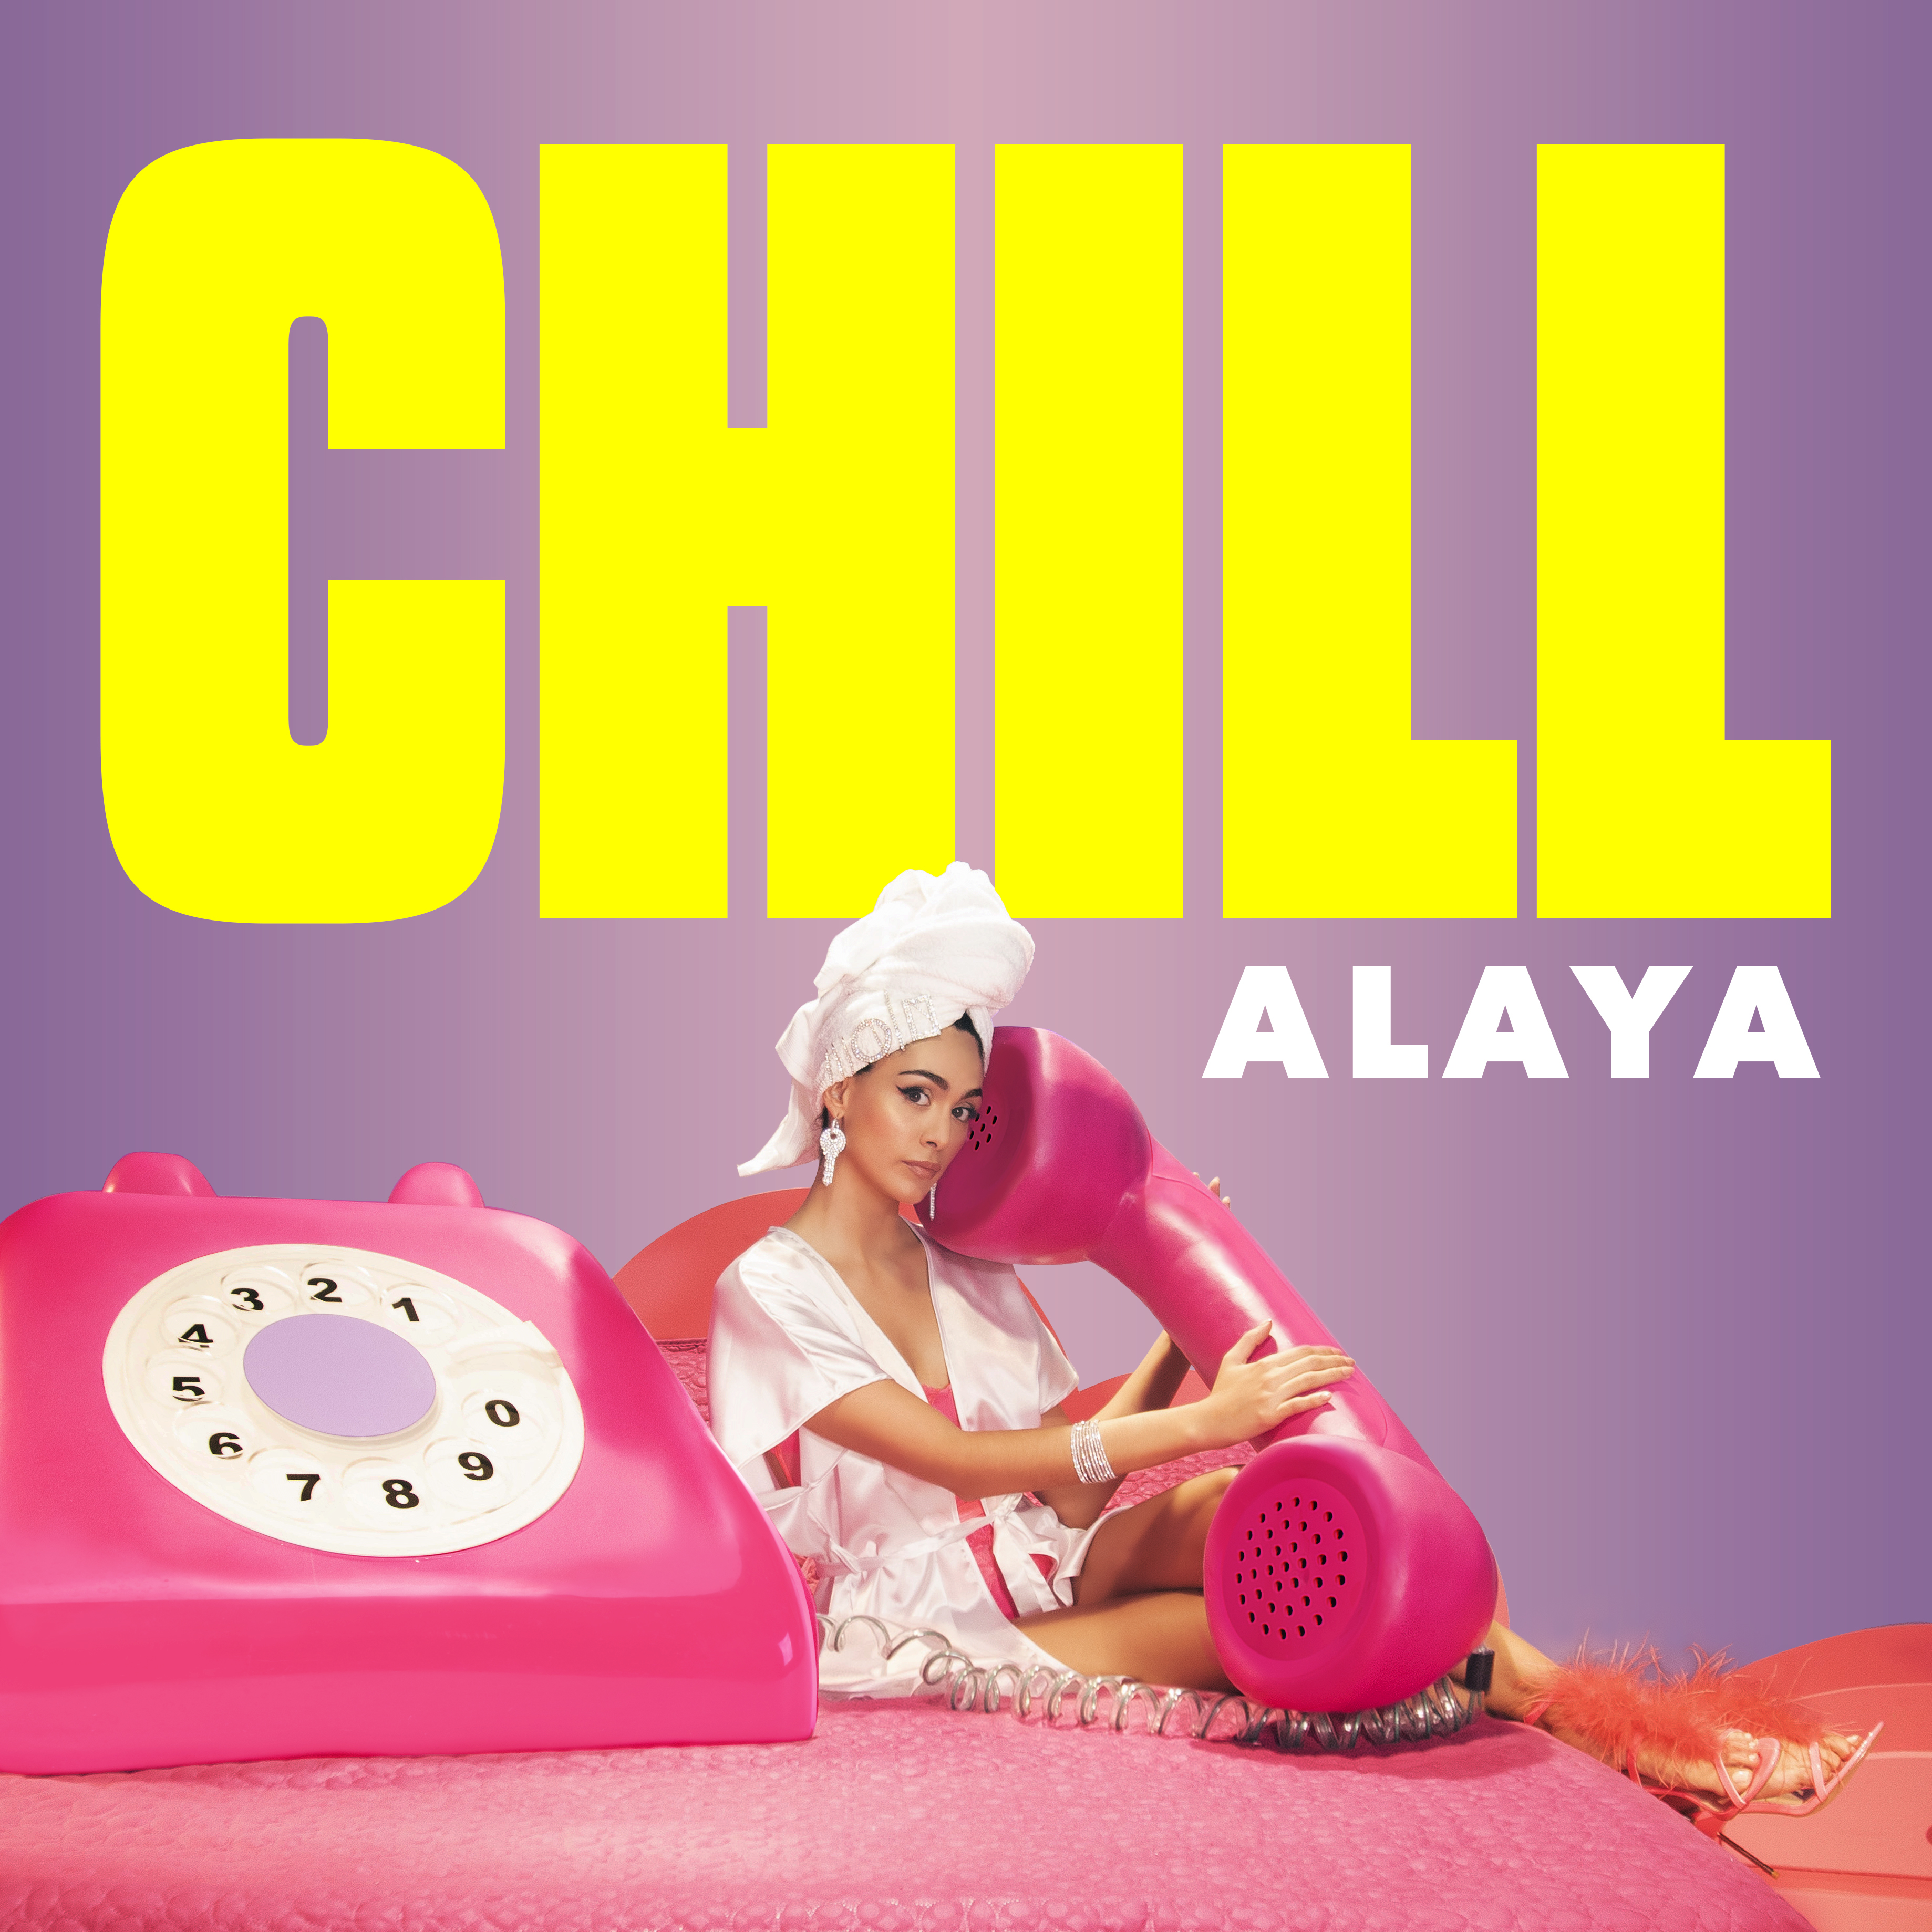 ALAYA estrena nuevo sencillo ‘Chill’